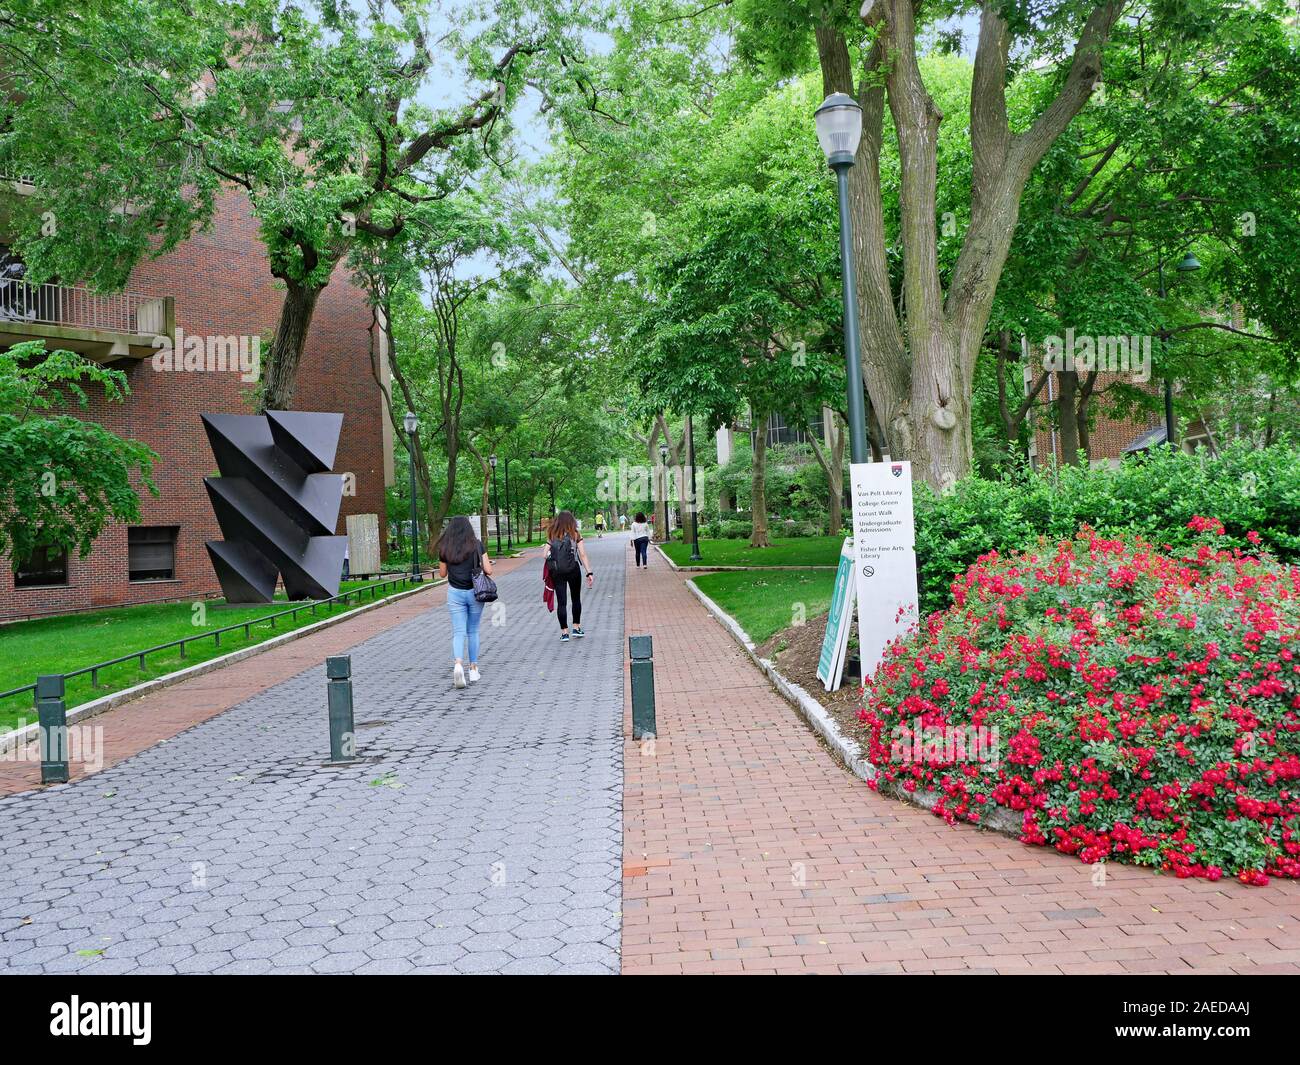 PHILADELPHIA - Mai 2019: Sogar von Ivy League Standards, dem Campus der Universität von Pennsylvania ist sehr grün und schattig, wie in diesem Blick entlang Lo gesehen Stockfoto